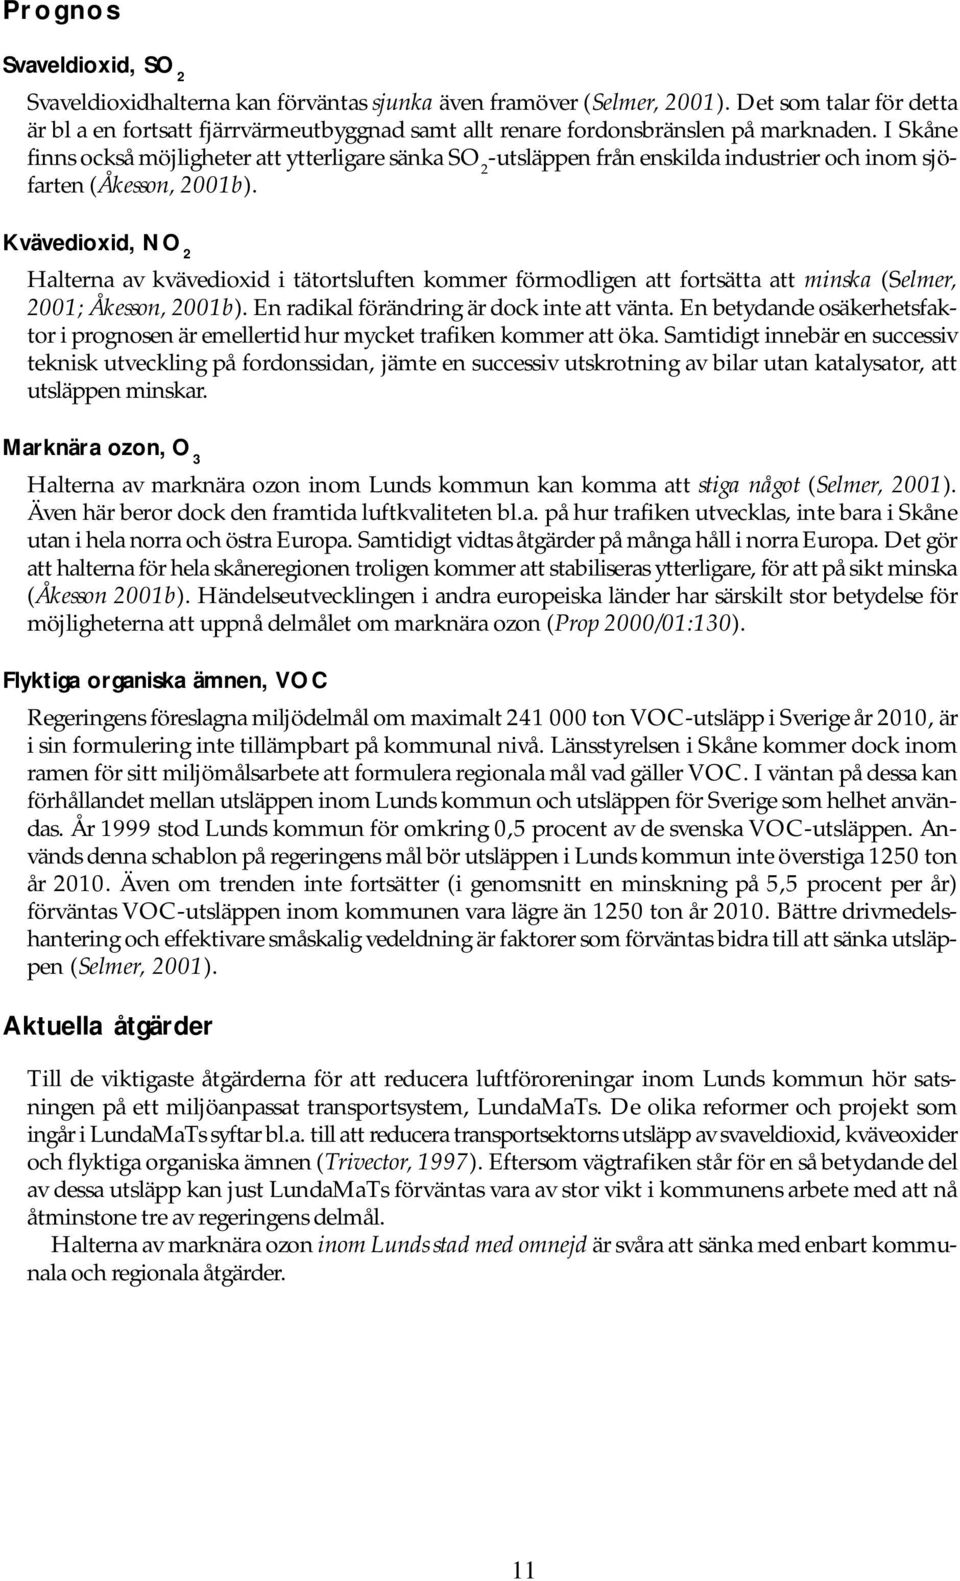 I Skåne finns också möjligheter att ytterligare sänka SO 2 -utsläppen från enskilda industrier och inom sjöfarten (Åkesson, 2001b).